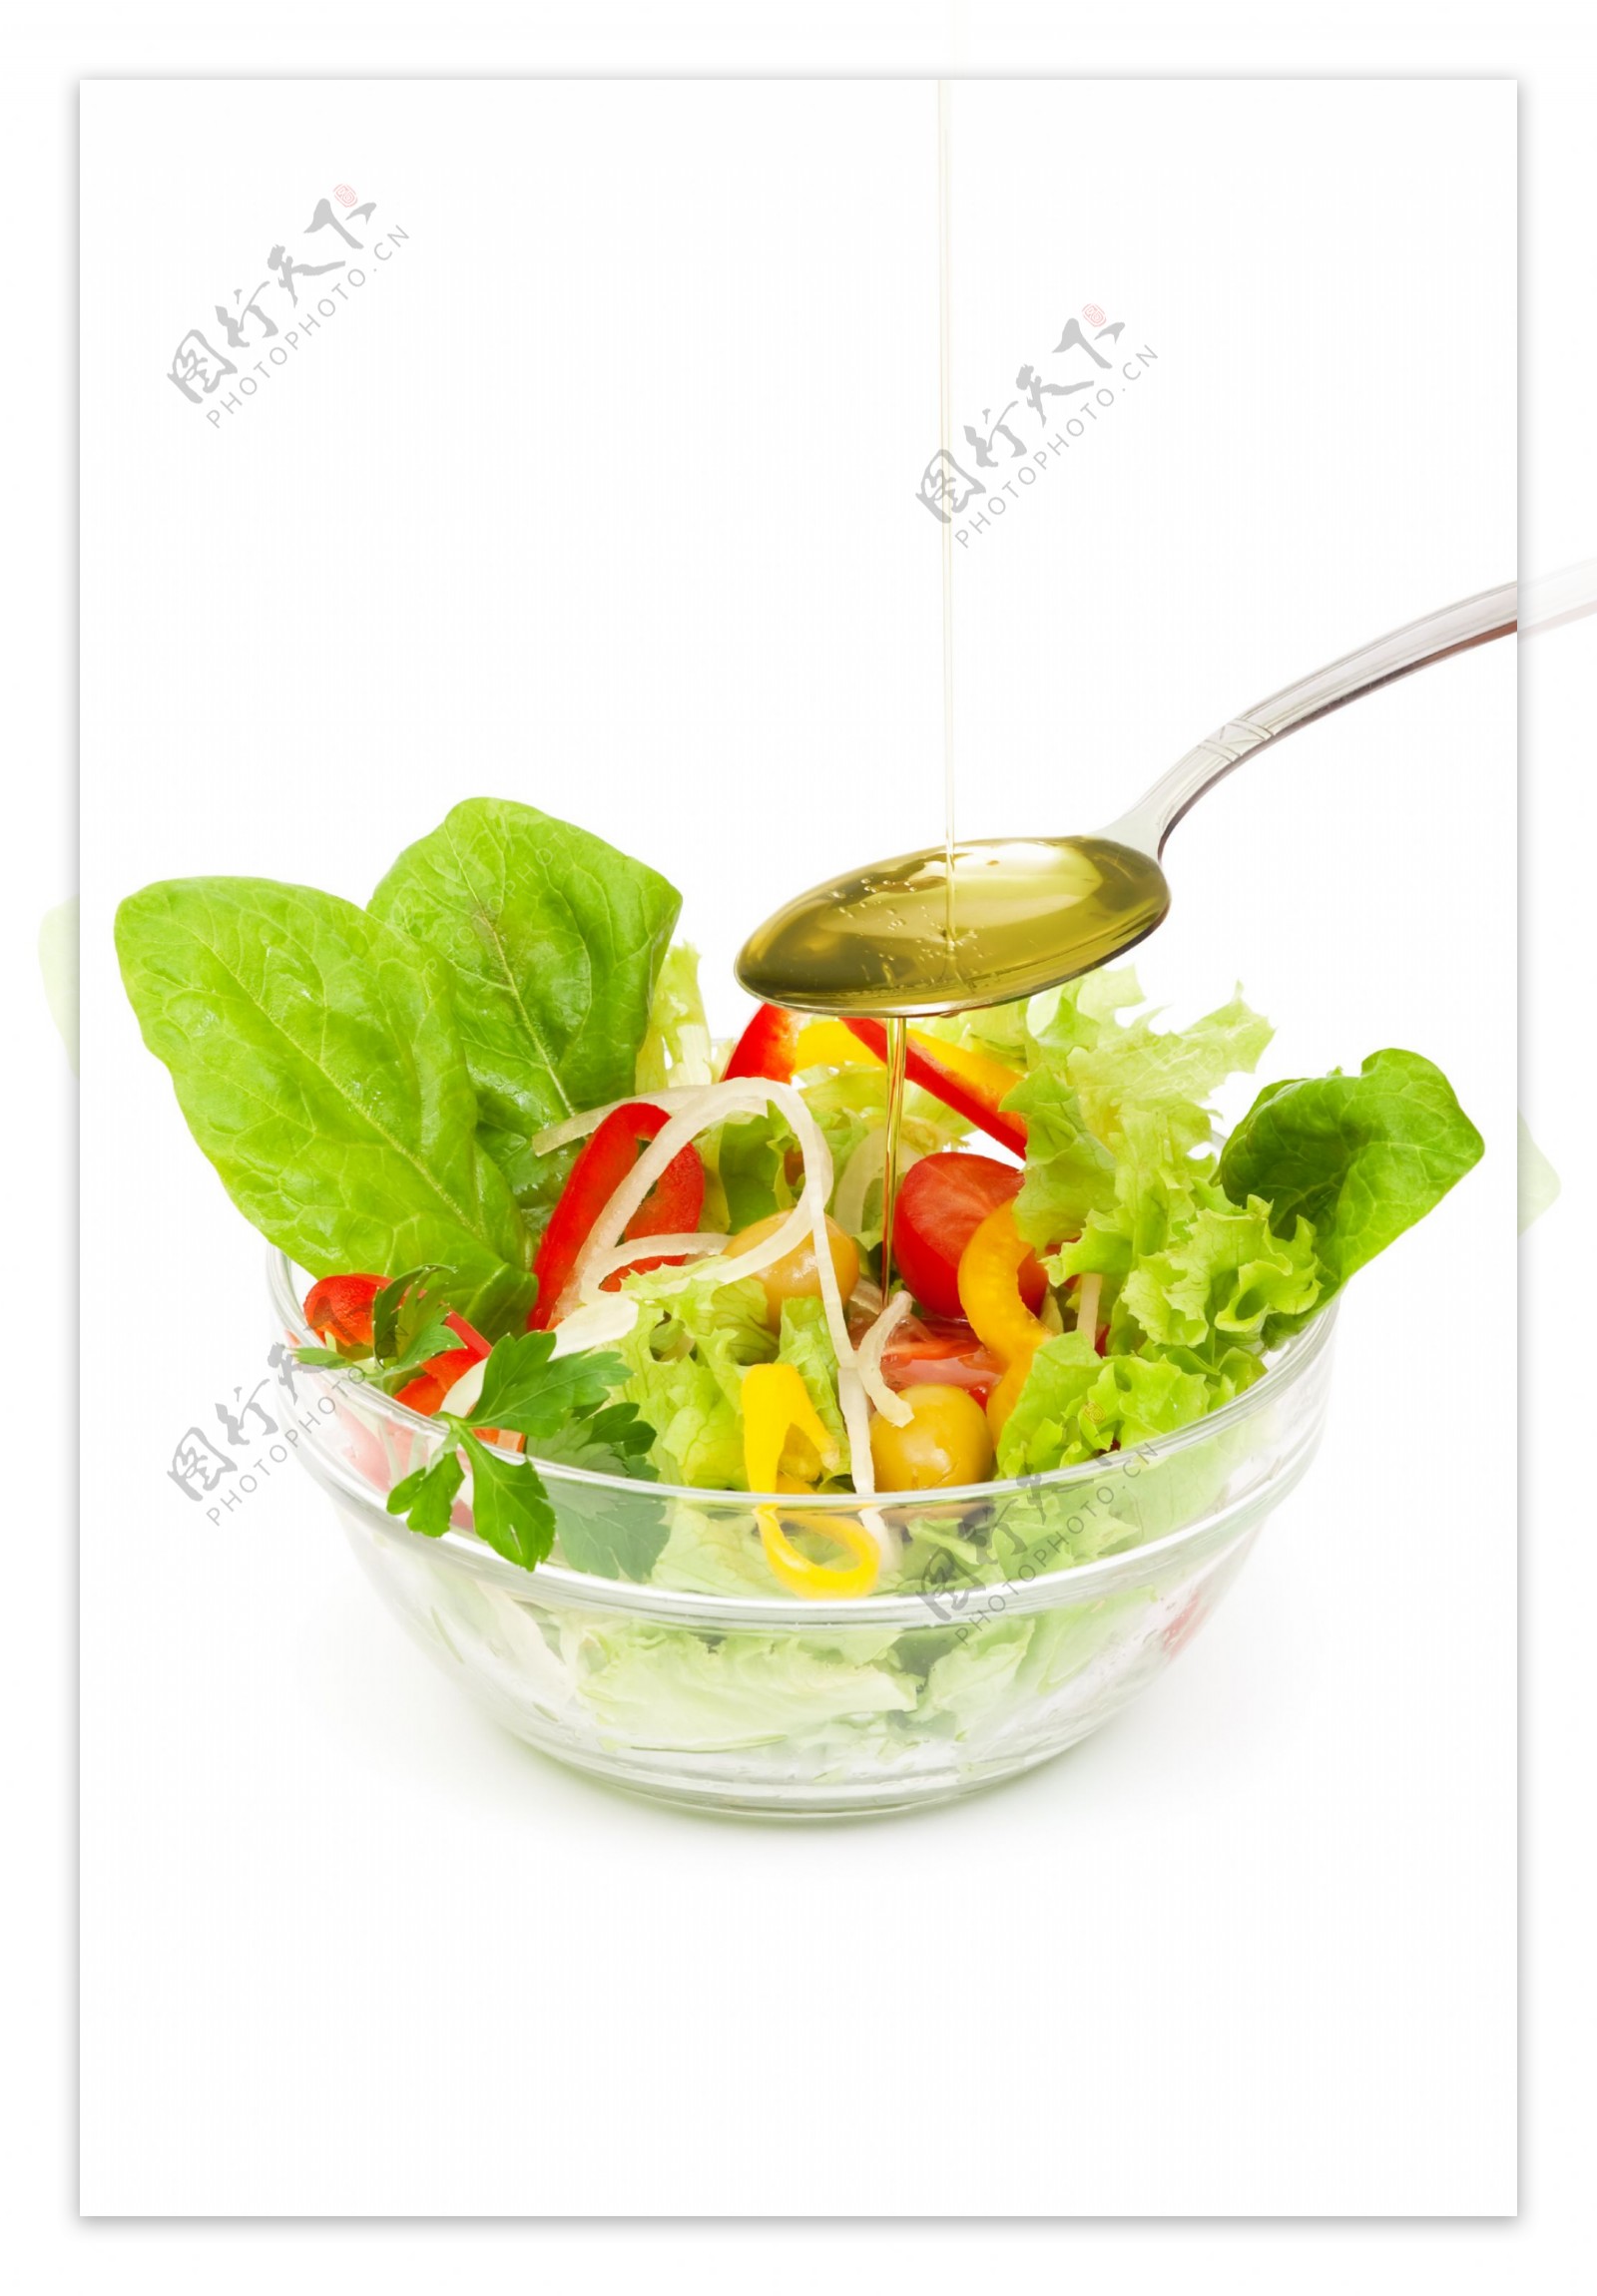 果蔬沙拉图片